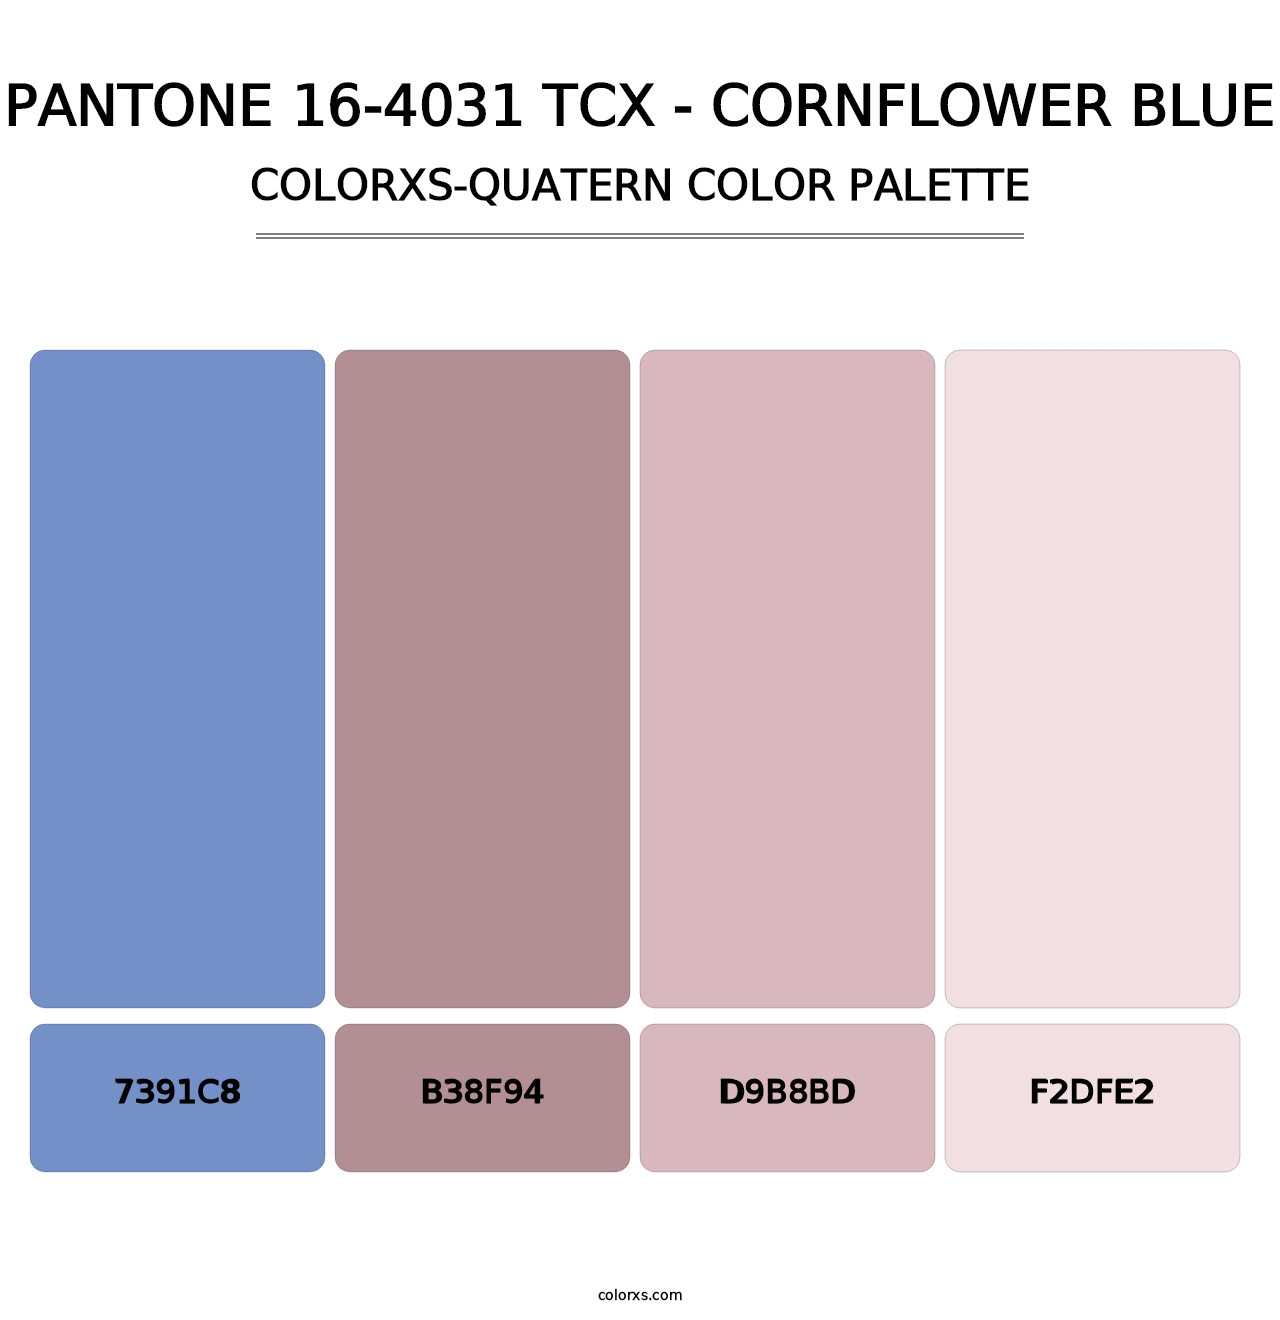 PANTONE 16-4031 TCX - Cornflower Blue - Colorxs Quatern Palette